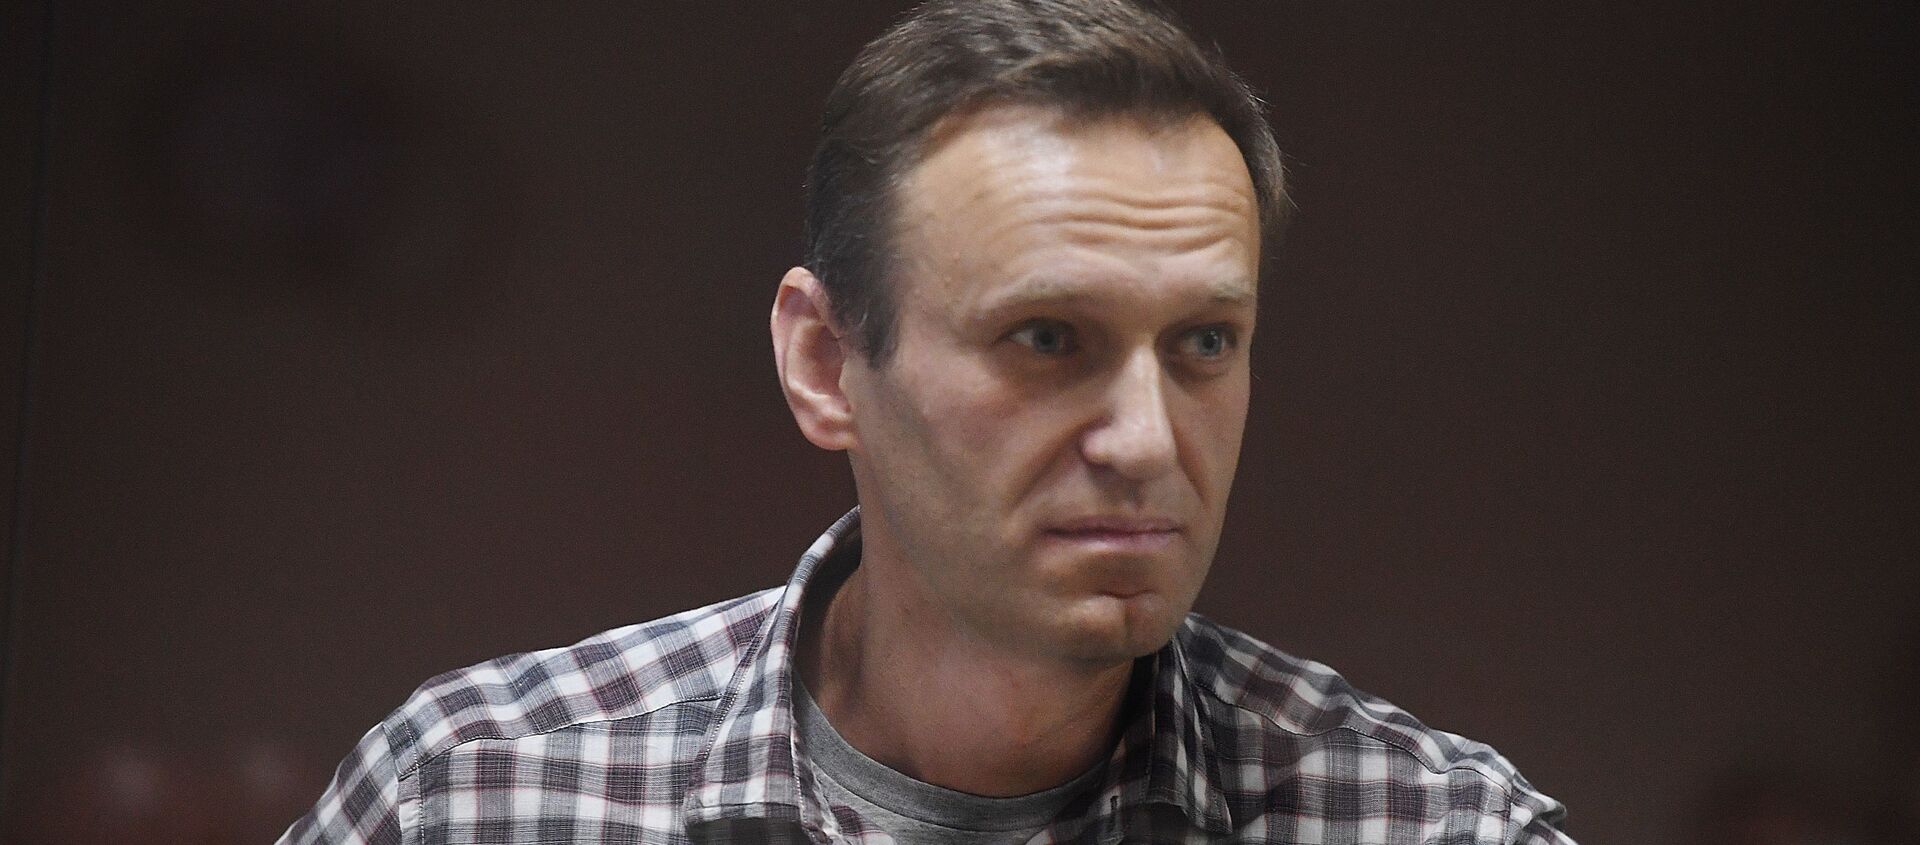 Алексей Навальный в зале суда - Sputnik Latvija, 1920, 21.02.2021